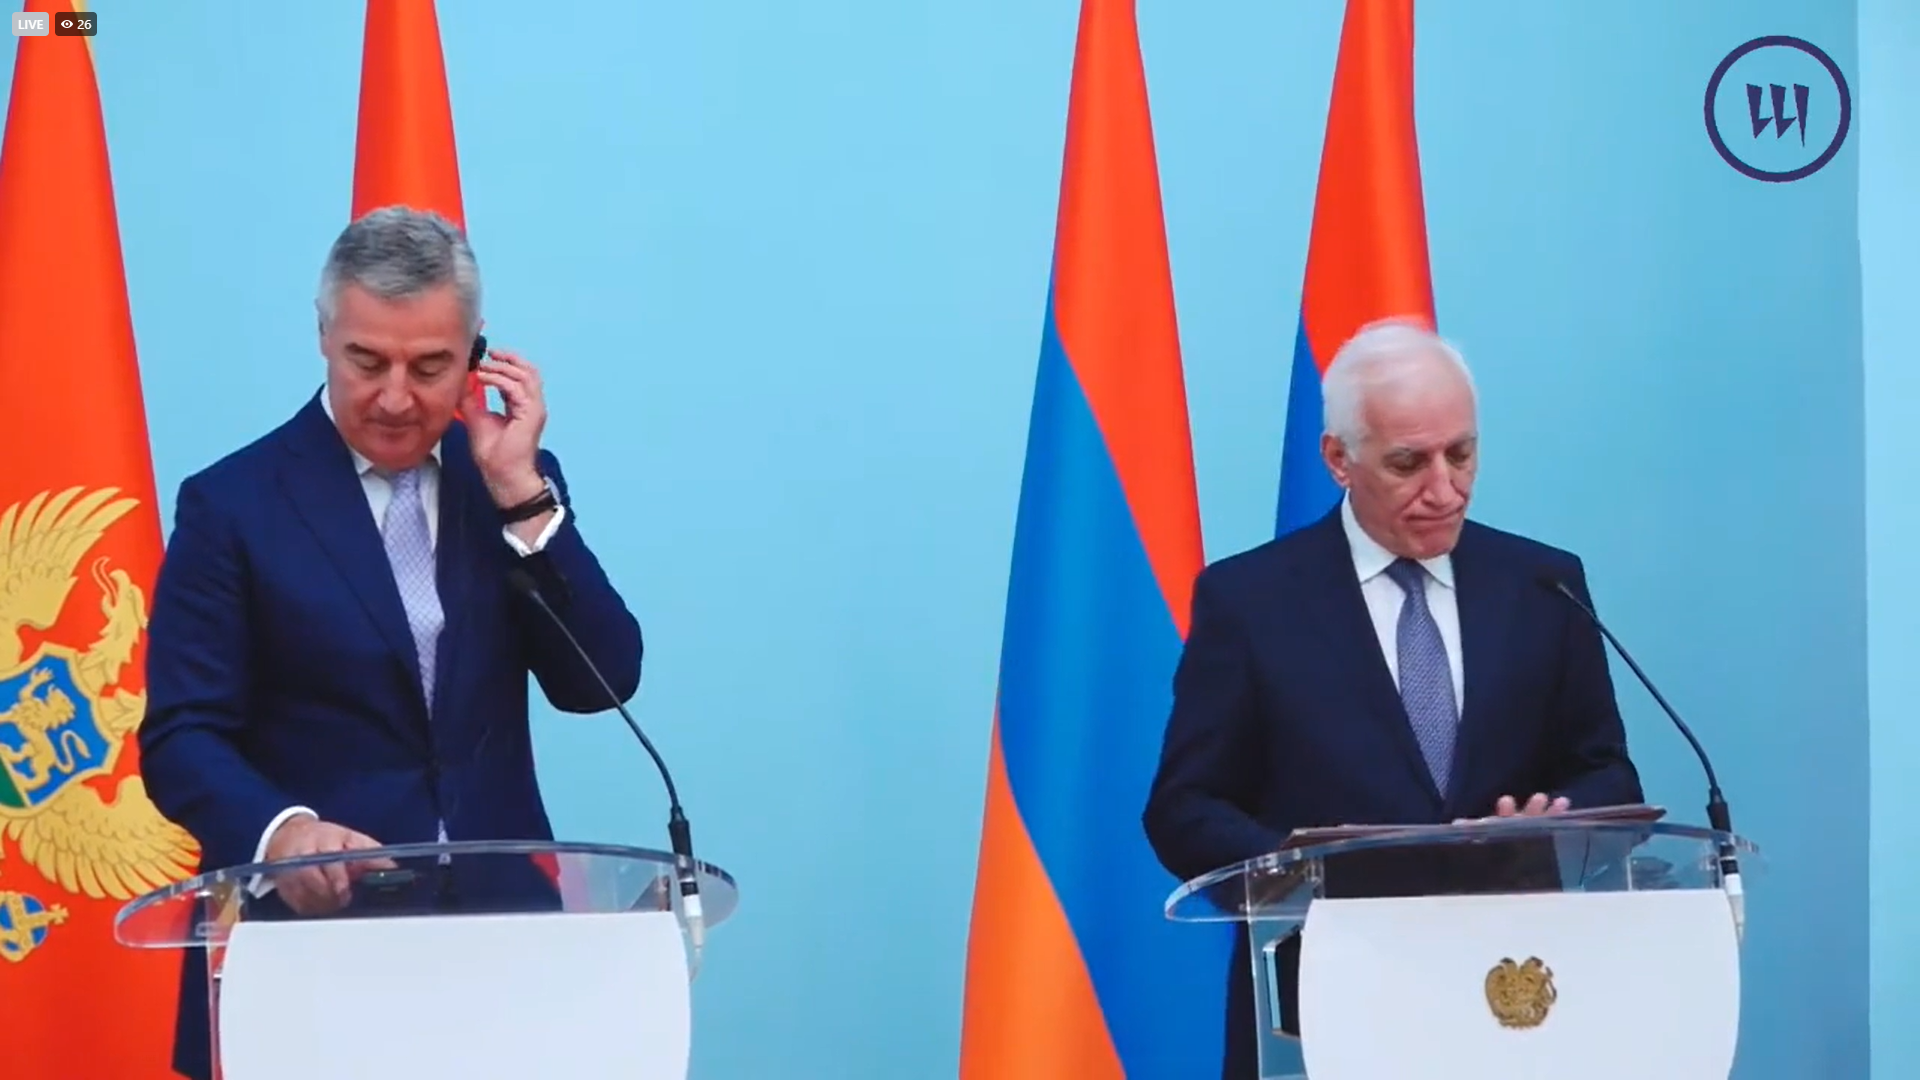 Հայաստանի և Չեռնոգորիայի նախագահները հանդես են գալիս լրատվամիջոցների համար հայտարարություններով. ուղիղ